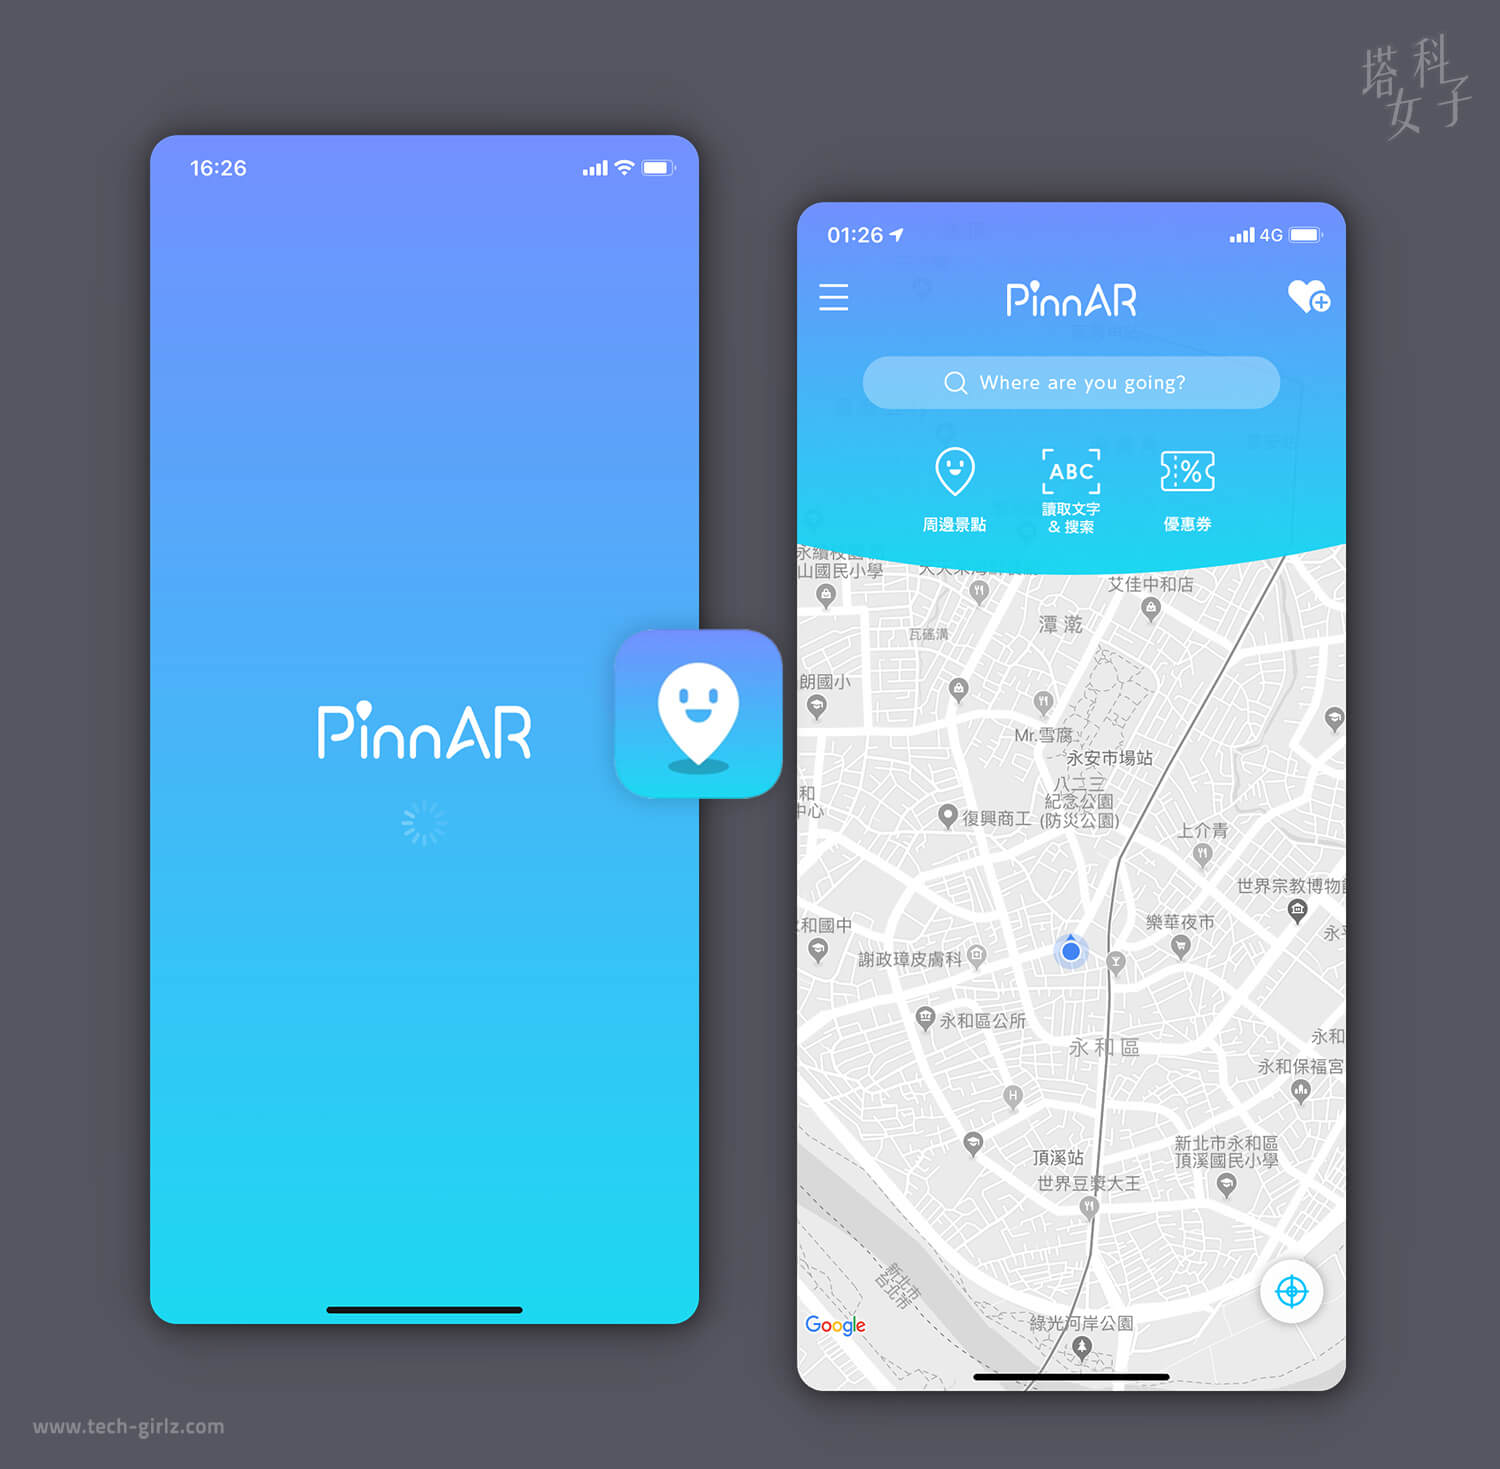 行人導航 APP 推薦｜PinnAR 用 AR 擴增實境讓你不再迷路！ - Android APP, iOS APP, 旅行 - 塔科女子